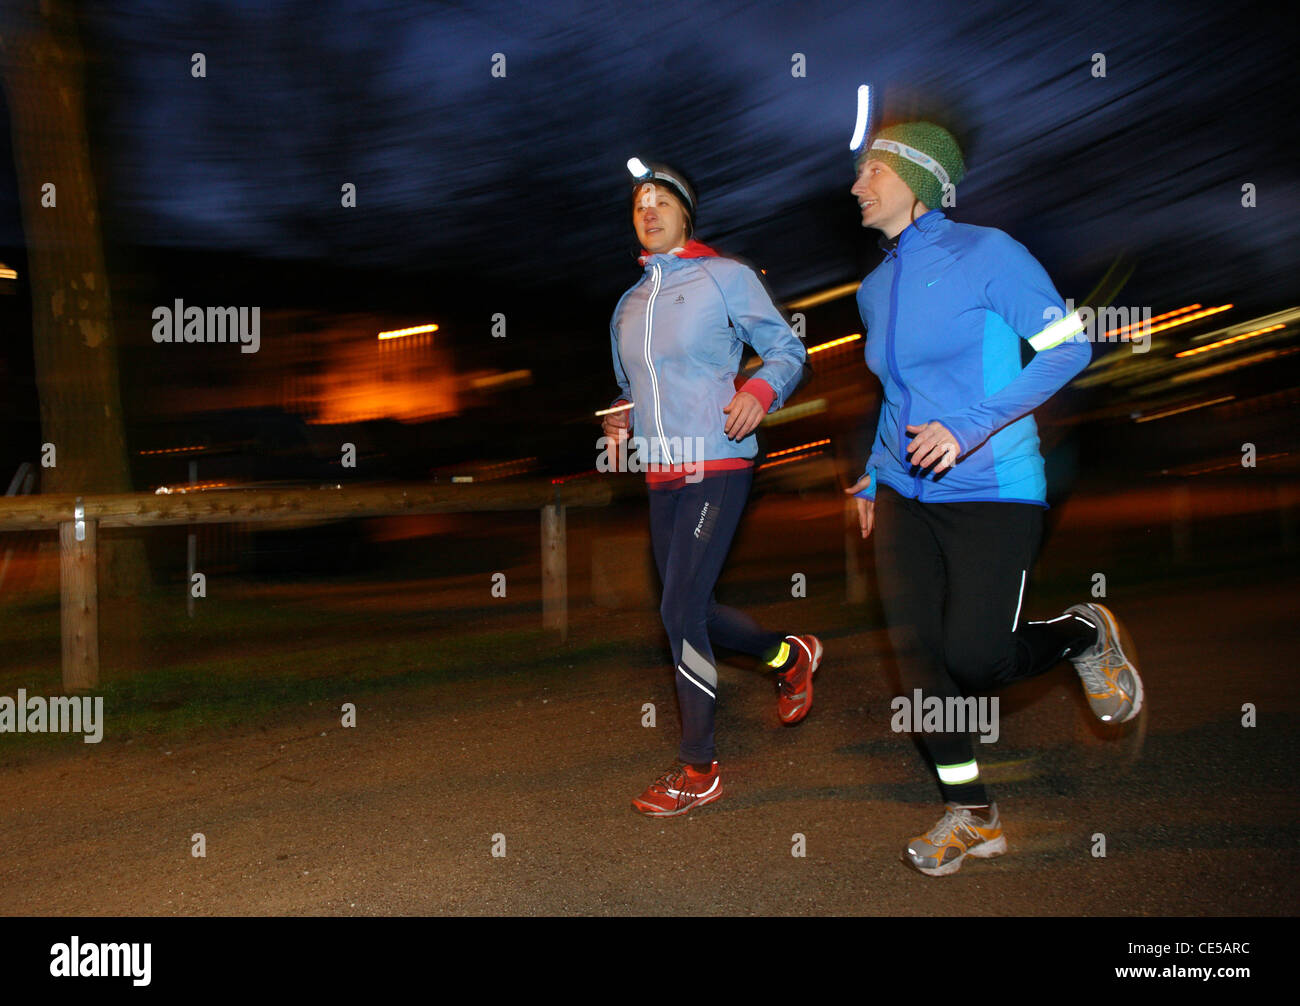 Deux jeunes femmes jogging la nuit en hiver, l'automne. Avec les projecteurs dans l'obscurité, sous l'étoffe. Banque D'Images